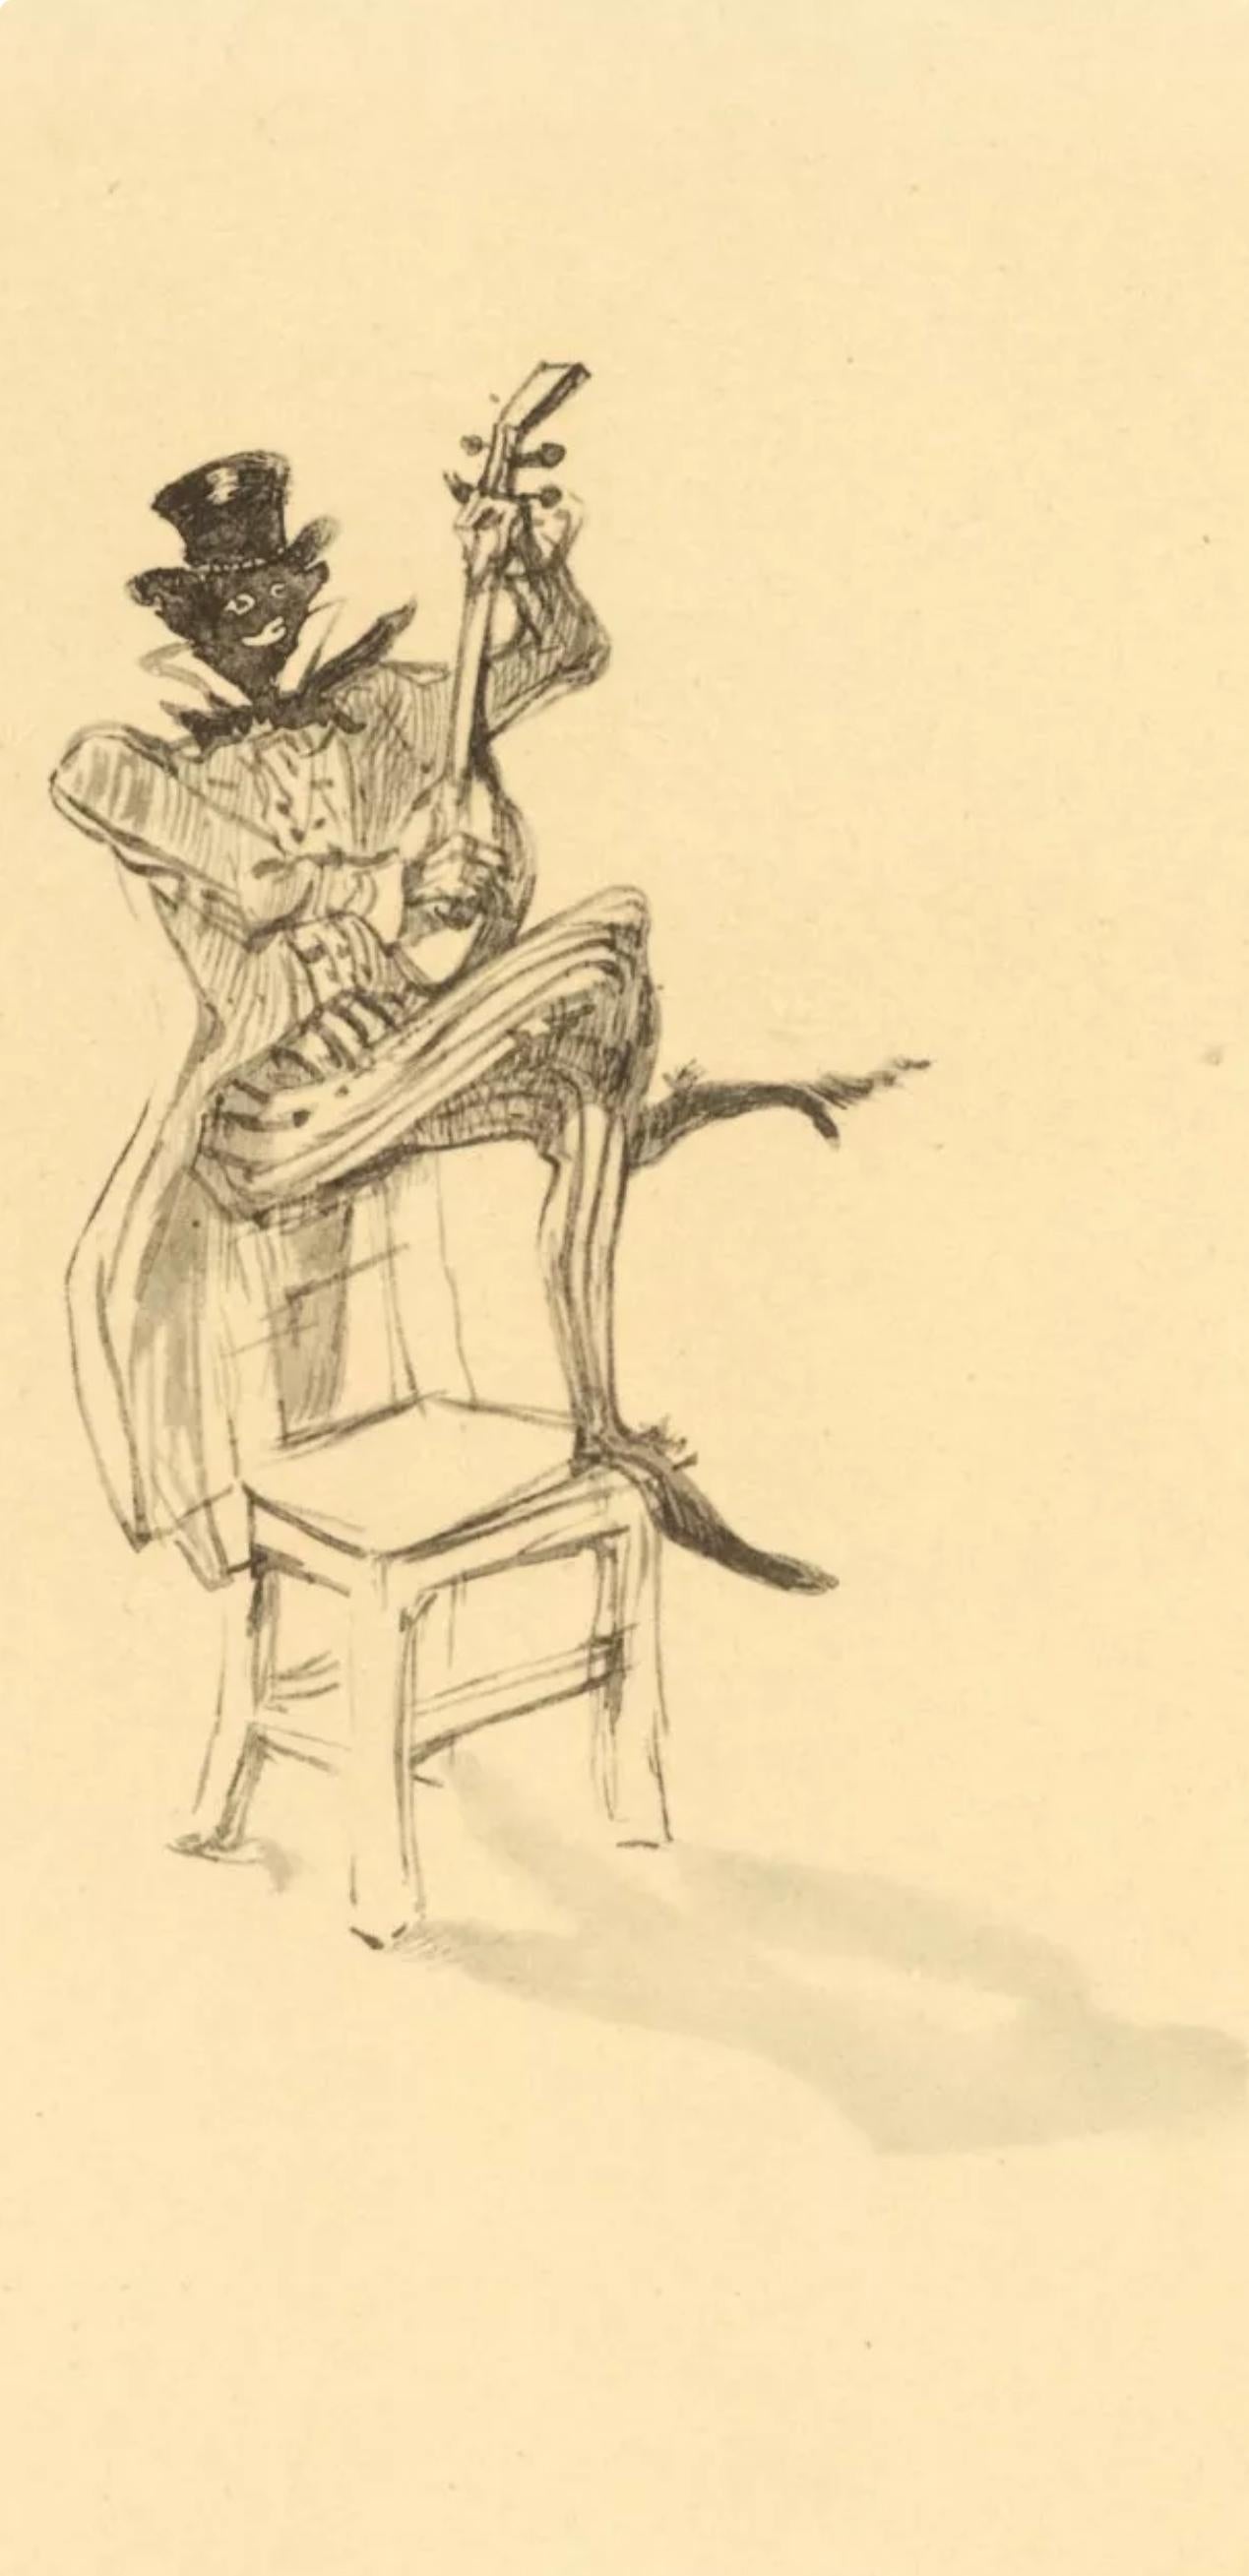 Toulouse-Lautrec, Nègre jouant du banjo, Le Cirque de Toulouse-Lautrec (d'après) - Print de Henri de Toulouse-Lautrec